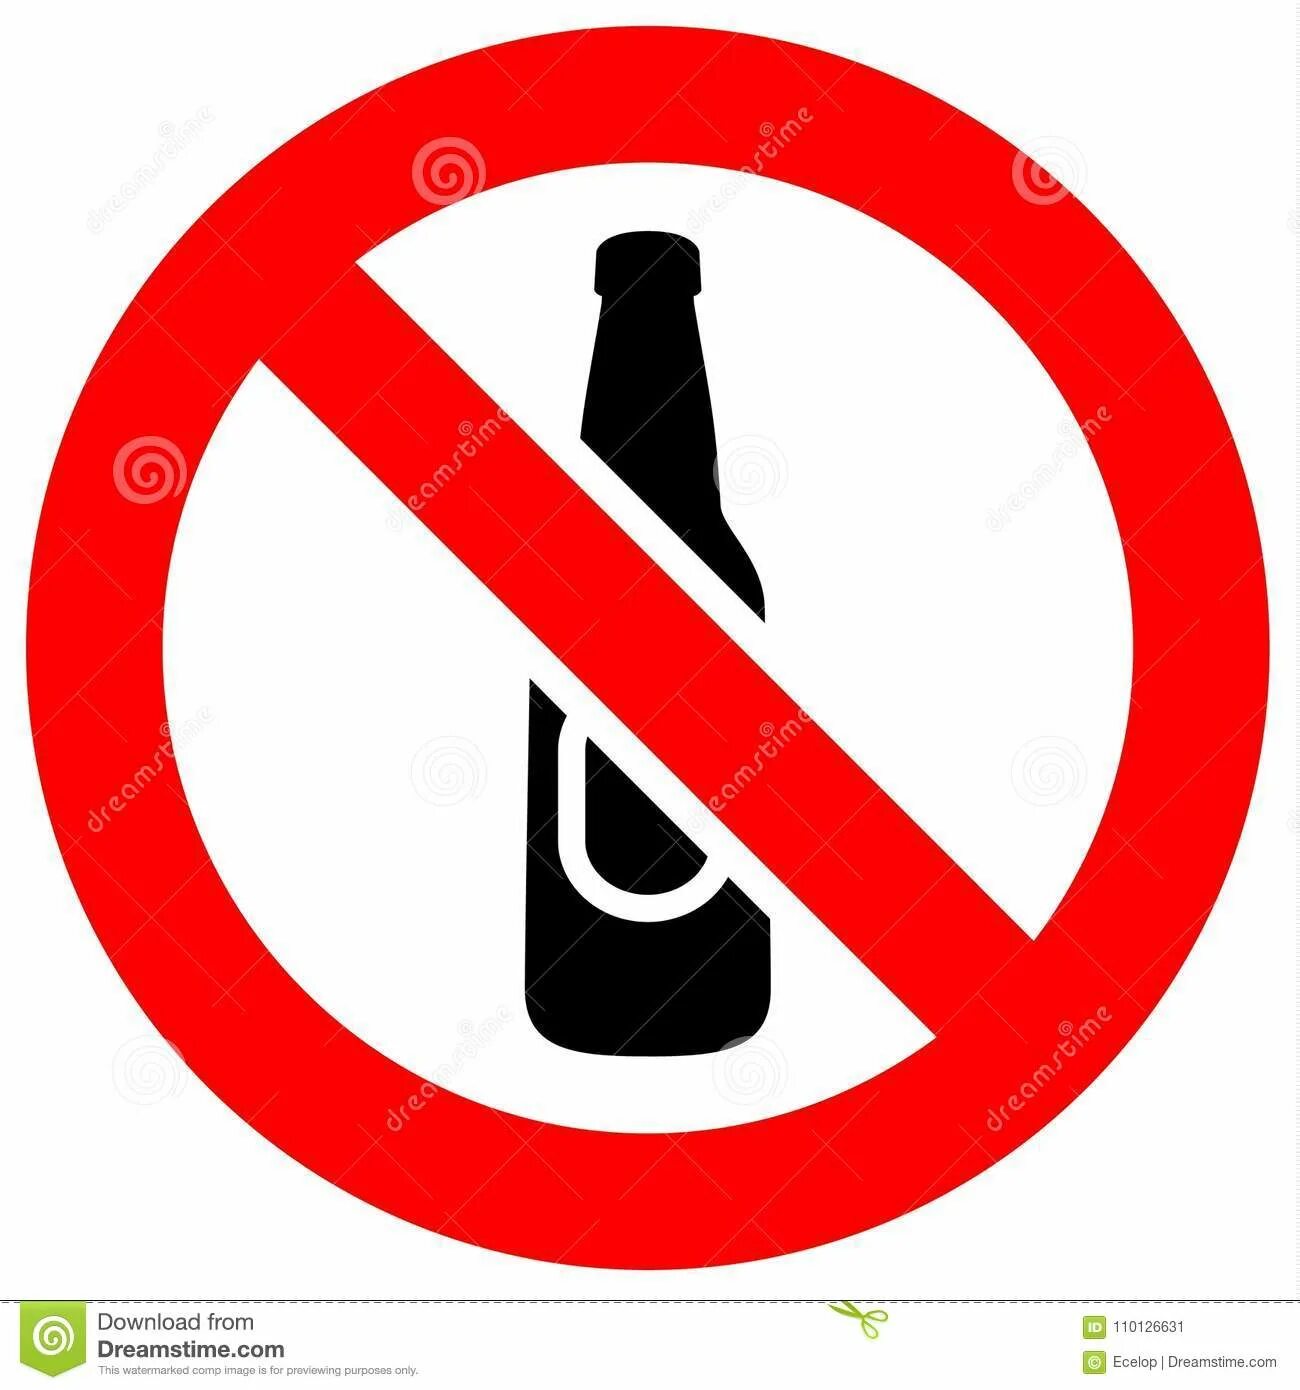 25 лет запрета. Знак алкоголь запрещен. Стекло запрещено. Значок детям до 3 лет запрещено. Знак качели запрещено.